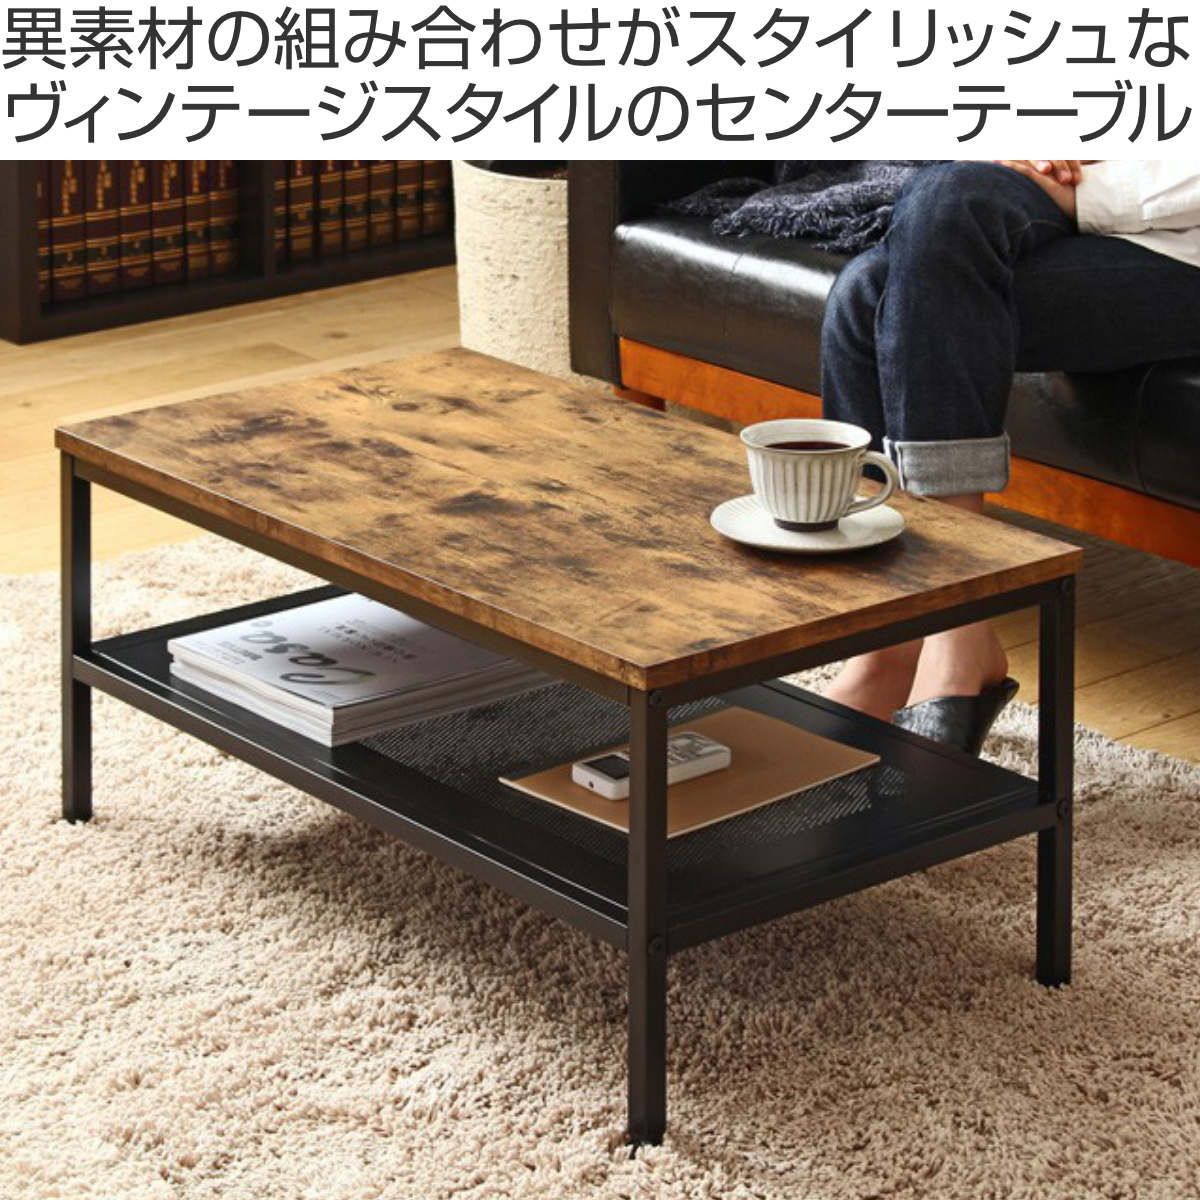 木目調 テーブル - テーブル